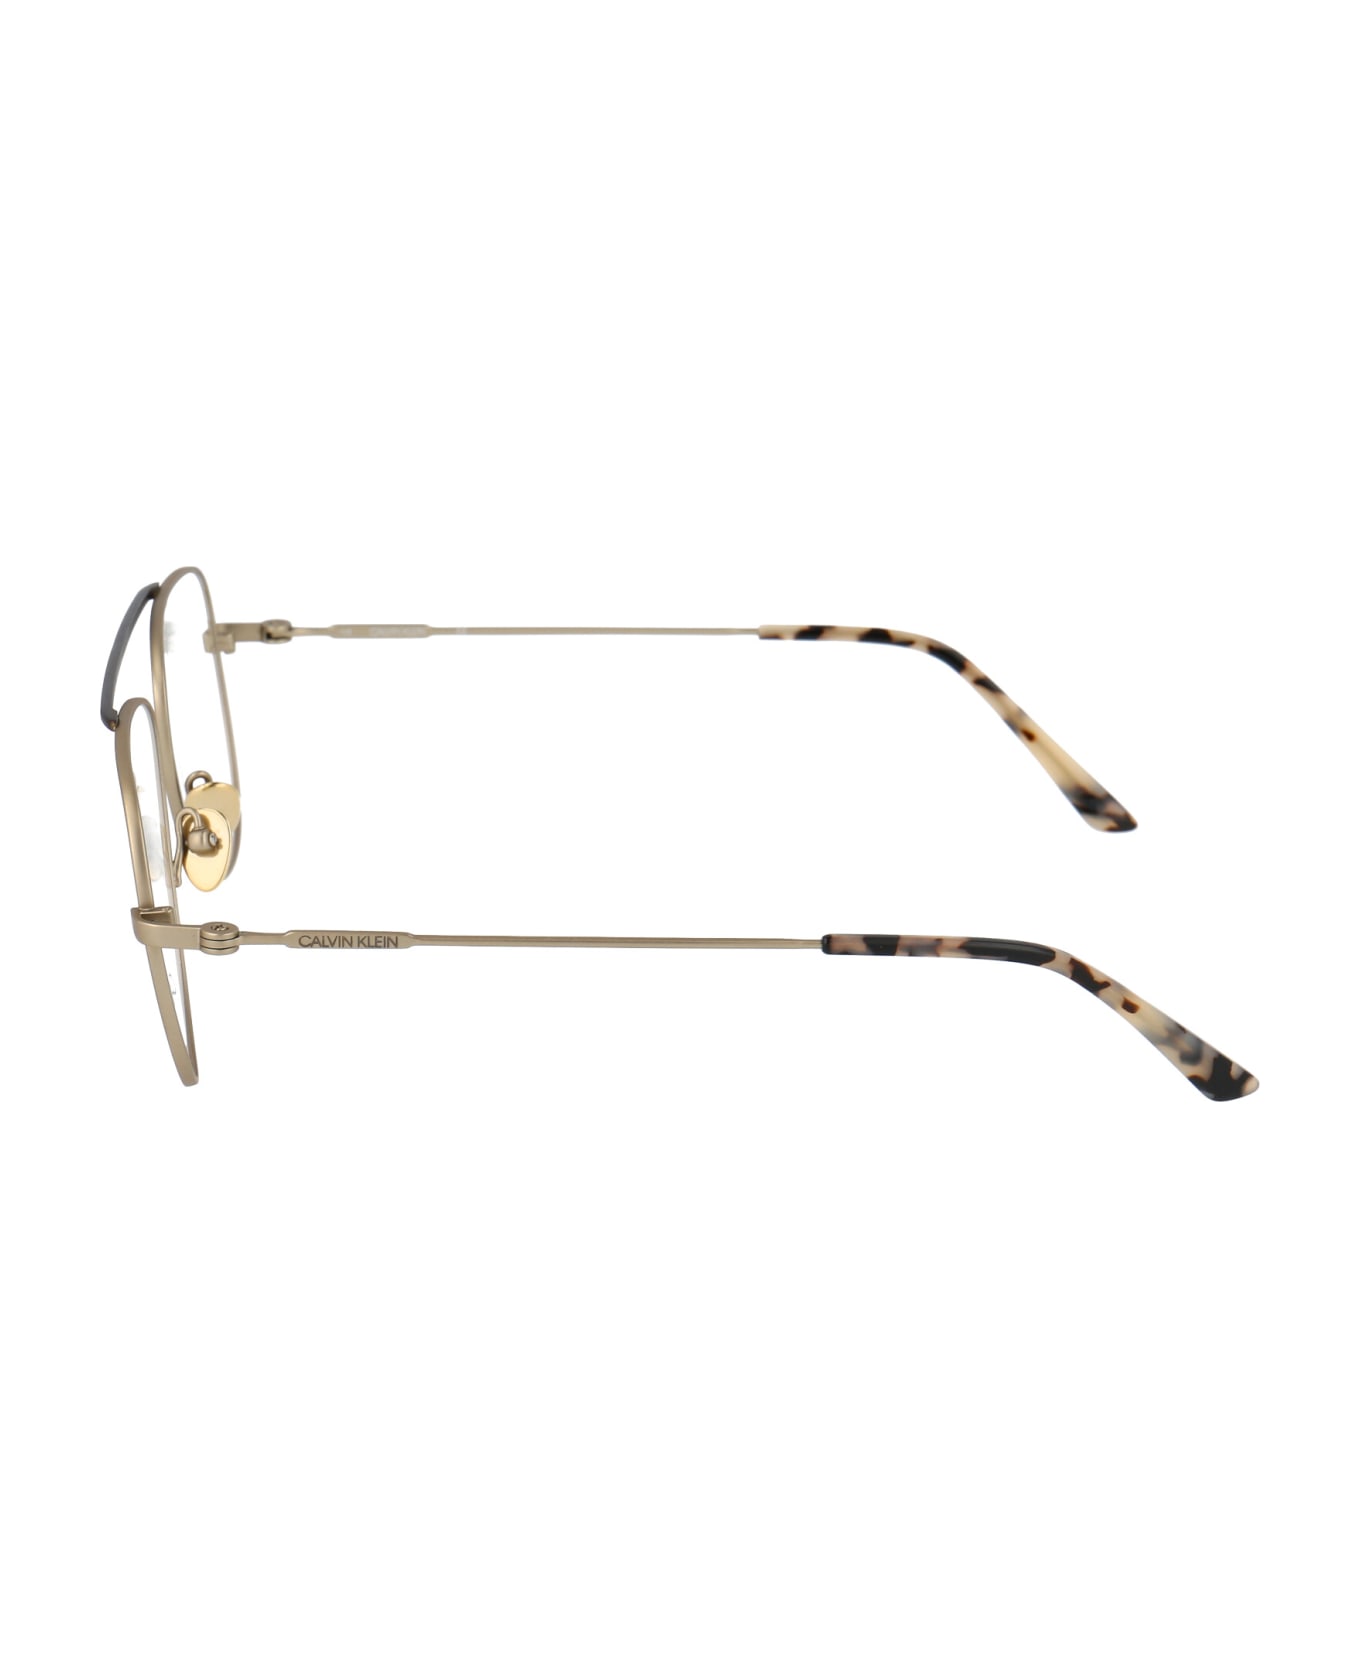 Calvin Klein Ck19152 Glasses - 716 SATIN LIGHT GOLD アイウェア